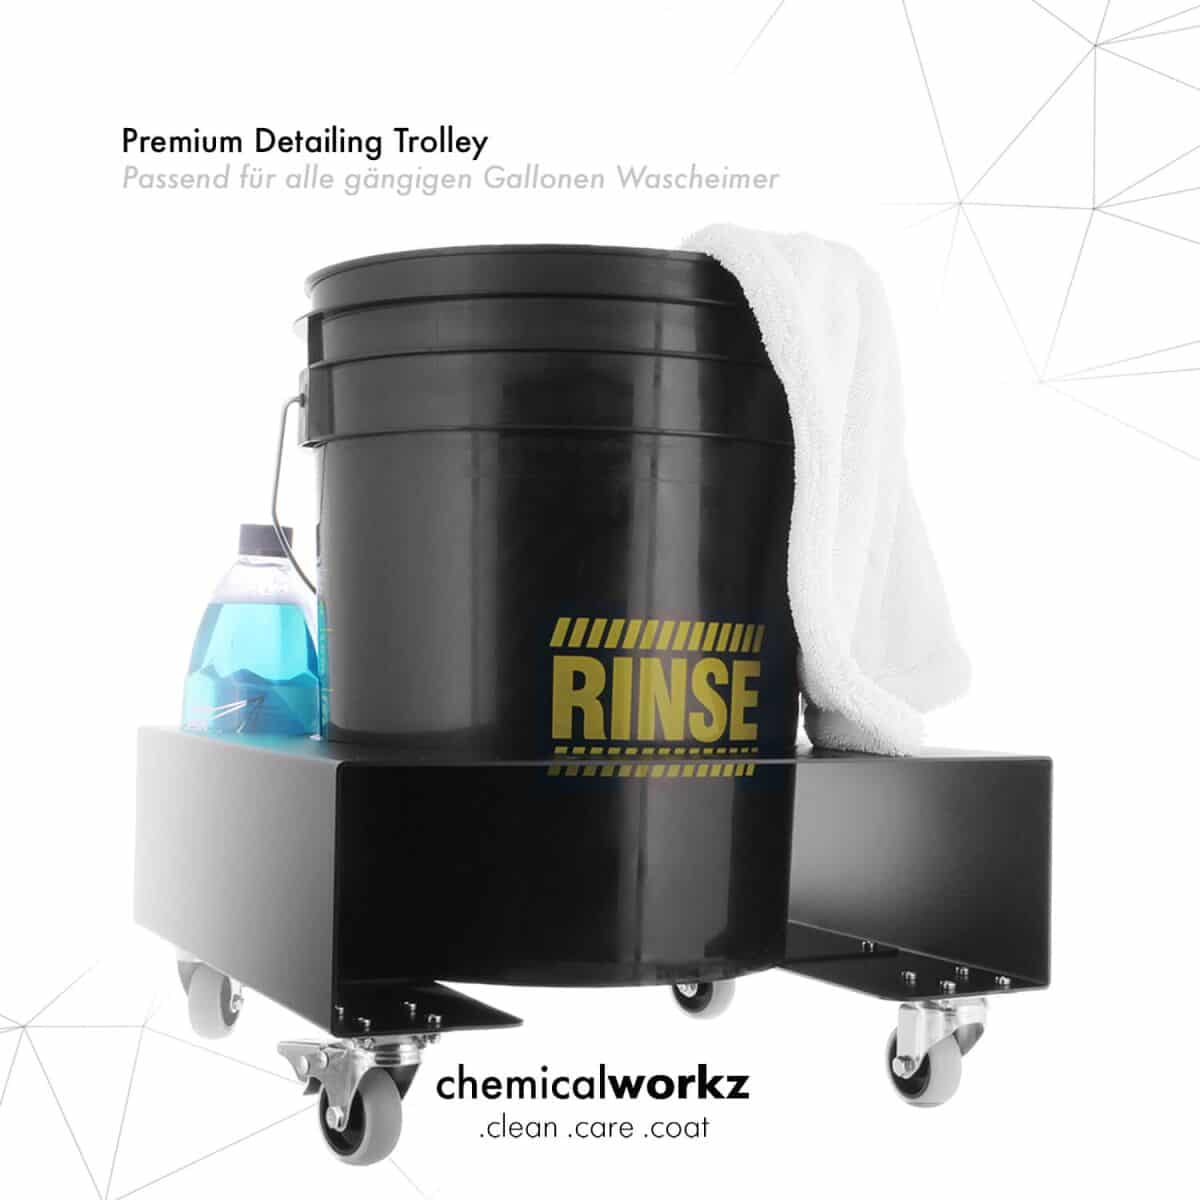 Chemicalworkz Detailing Trolley für Wascheimer RINSE